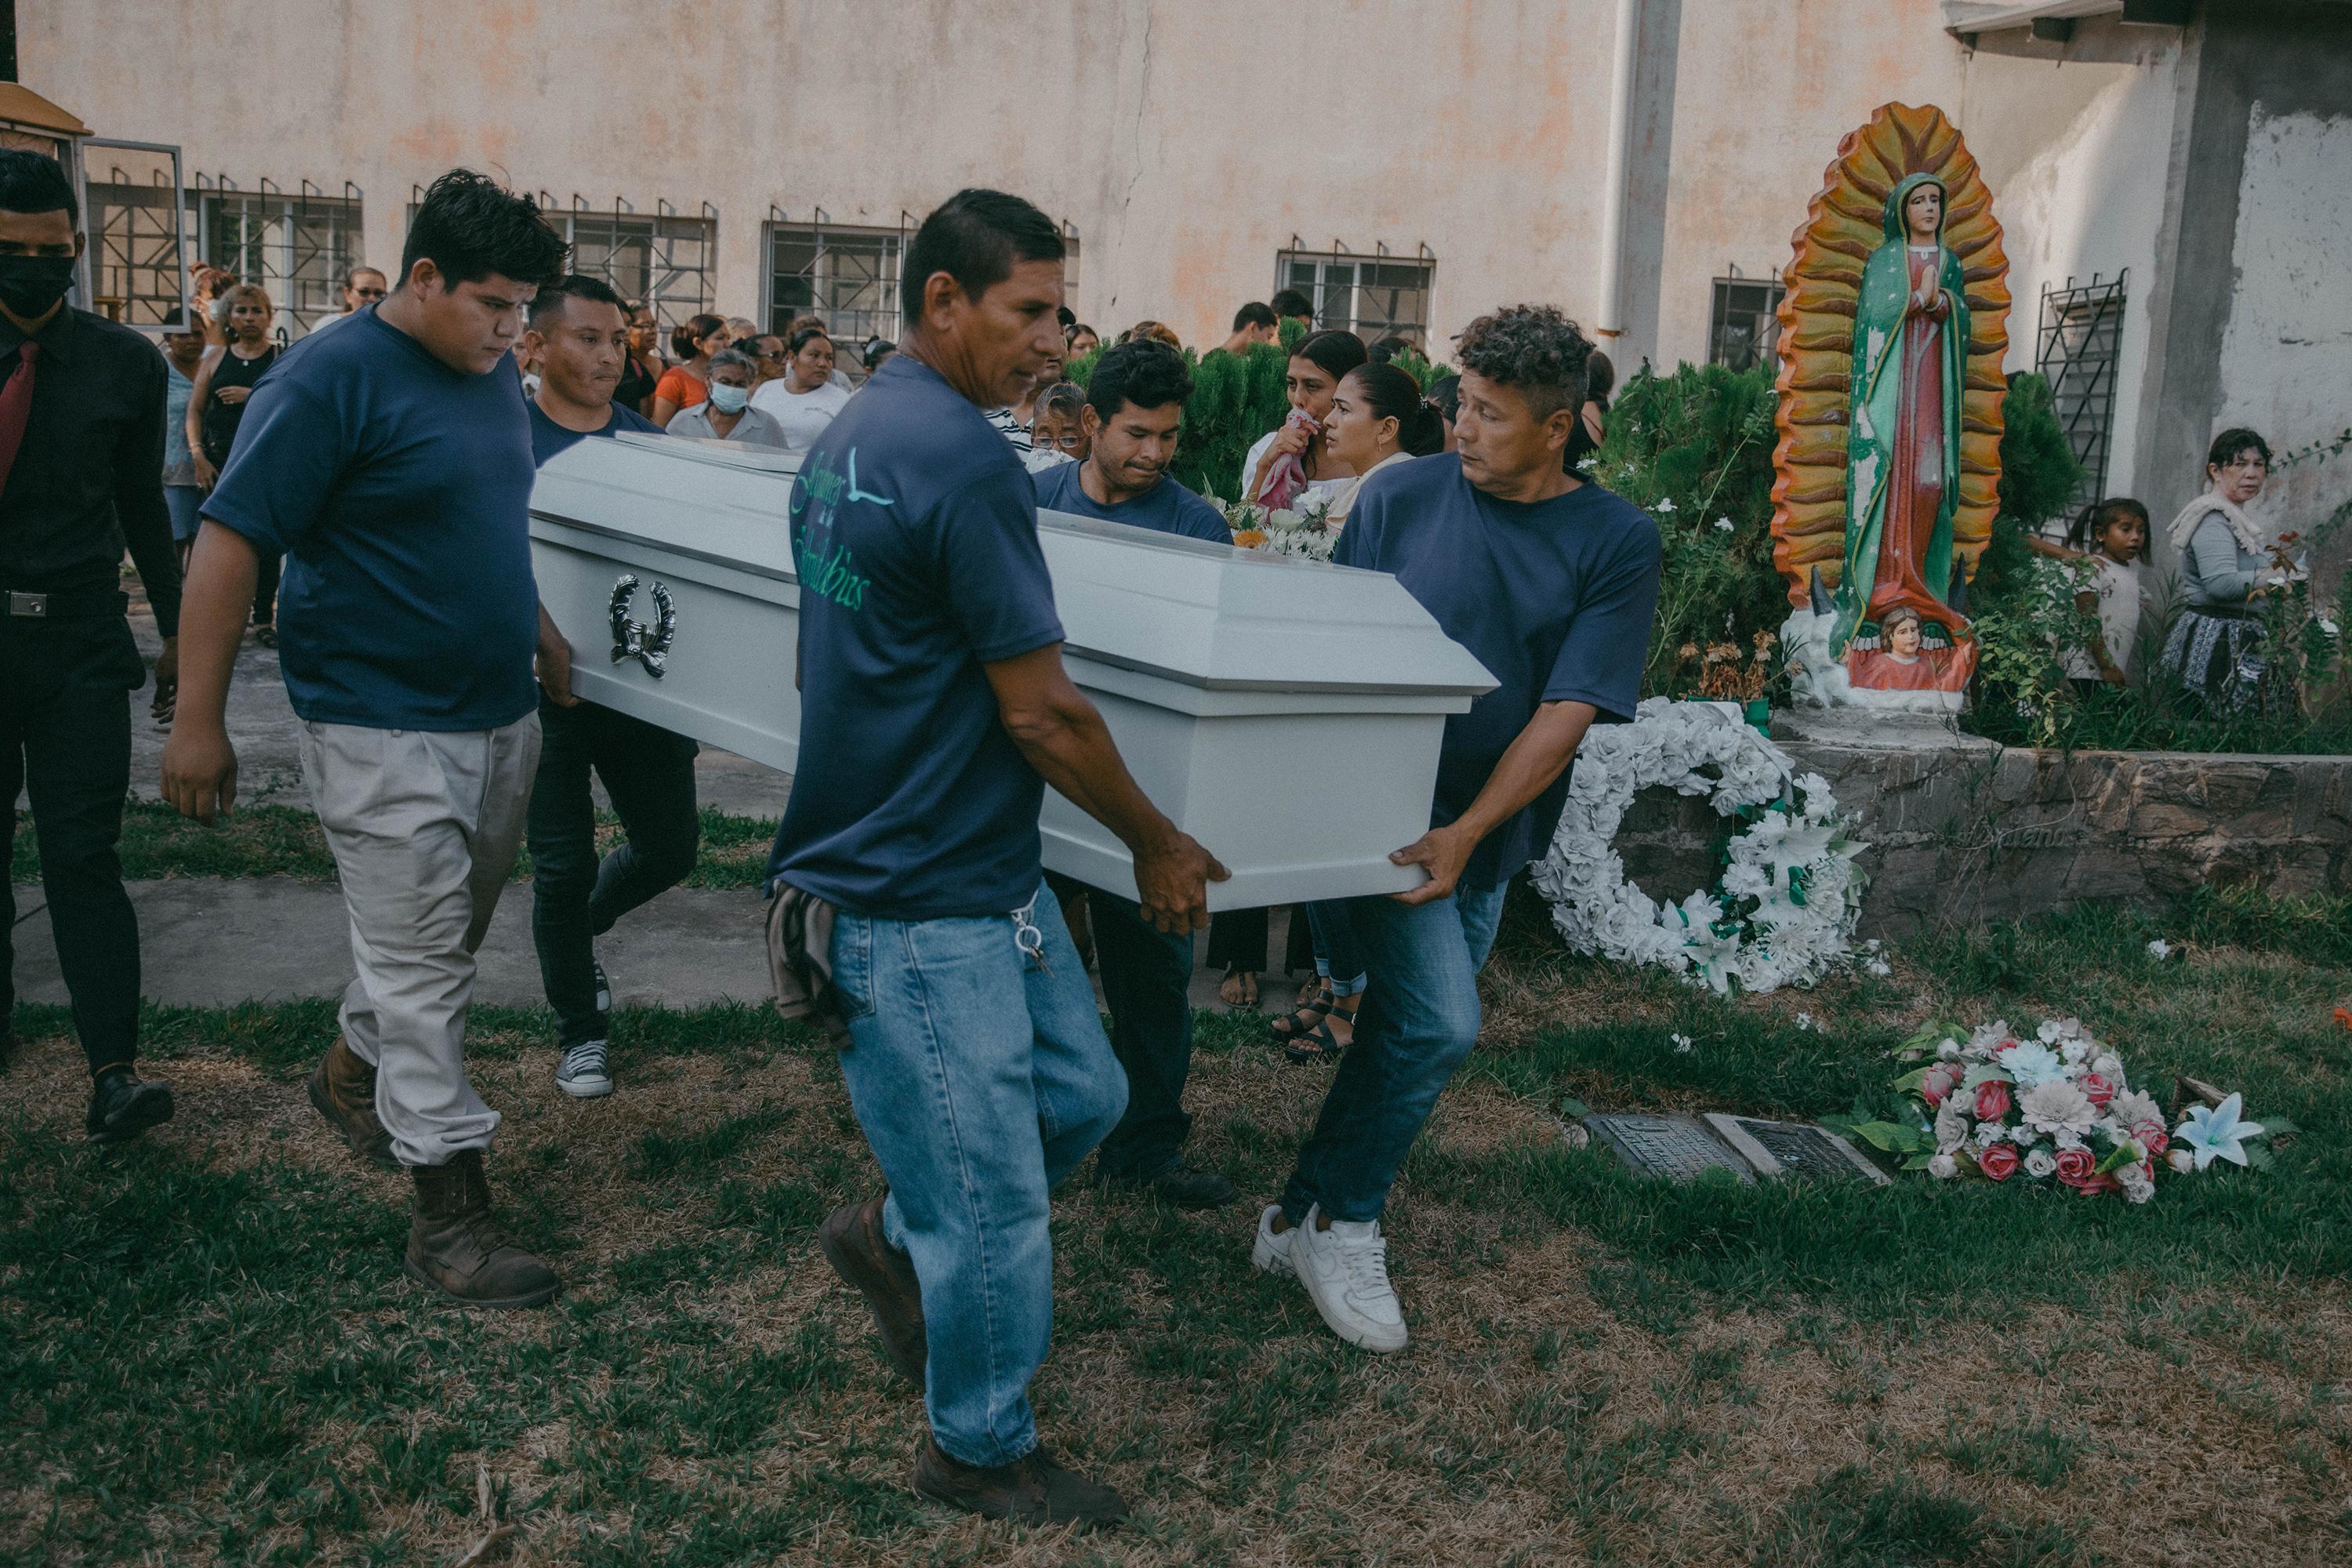 Empleados de una funeraria cargan el ataúd con los restos de Rodrigo Vásquez, de 44 años, que fue detenido el 9 de mayo de 2022 bajo el régimen de excepción de El Salvador y murió en la cárcel de Izalco. Según medicina legal, Vásquez murió por una neumonía. Foto de El Faro: Carlos Barrera.